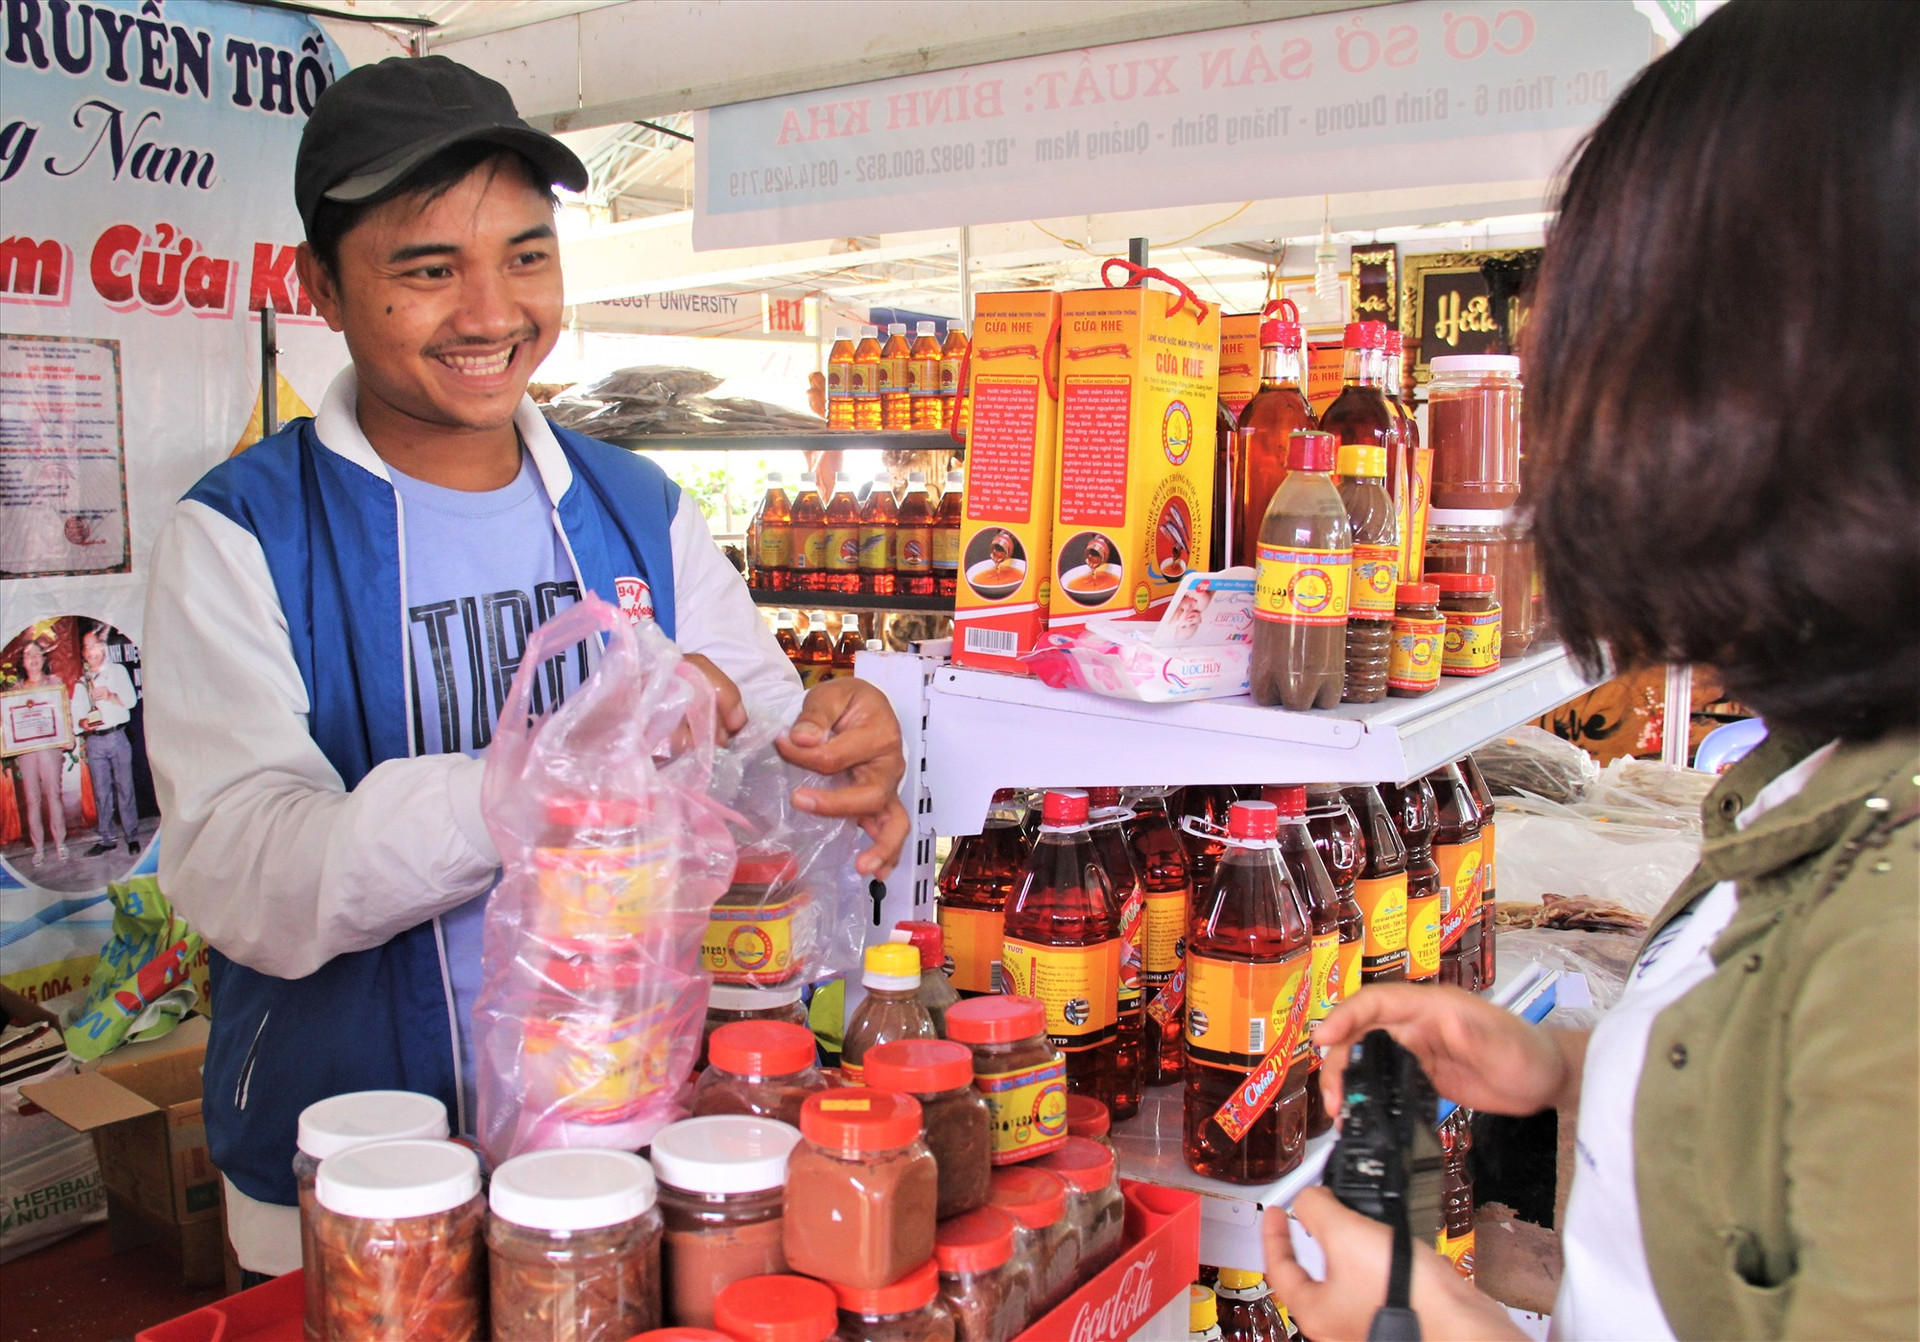 Không gian trưng bày các sản phẩm làng nghề Quảng Nam trở thành điểm nhấn tại chương trình “Những ngày văn hóa đồng hương Quảng Nam tại TP.Hồ Chí Minh”. Ảnh: ALĂNG NGƯỚC